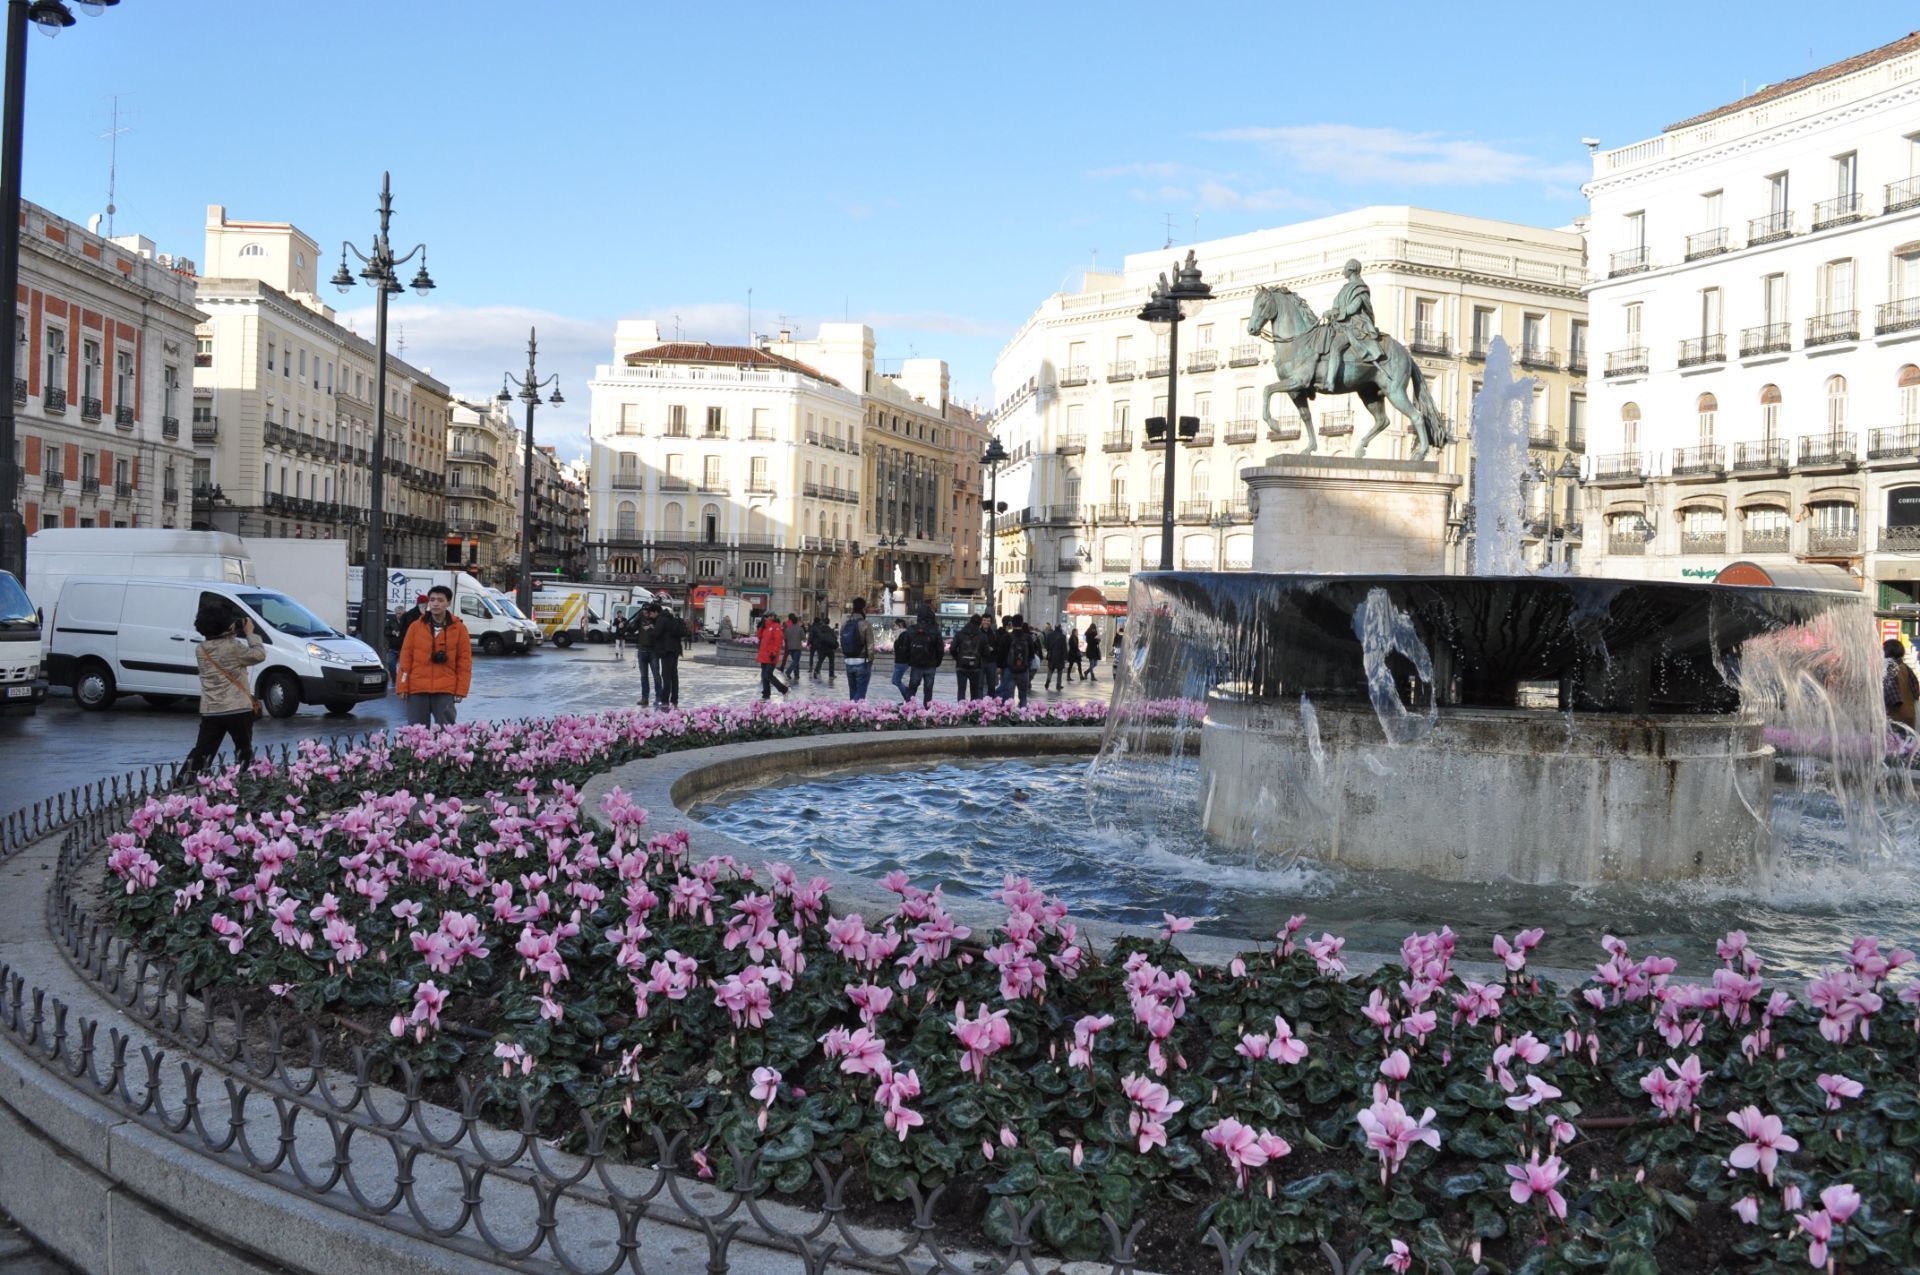 【携程攻略】马德里太阳门广场景点,太阳门广场上著名的“熊抱树”雕塑是马德里的标志之一。讲述了一段勇…